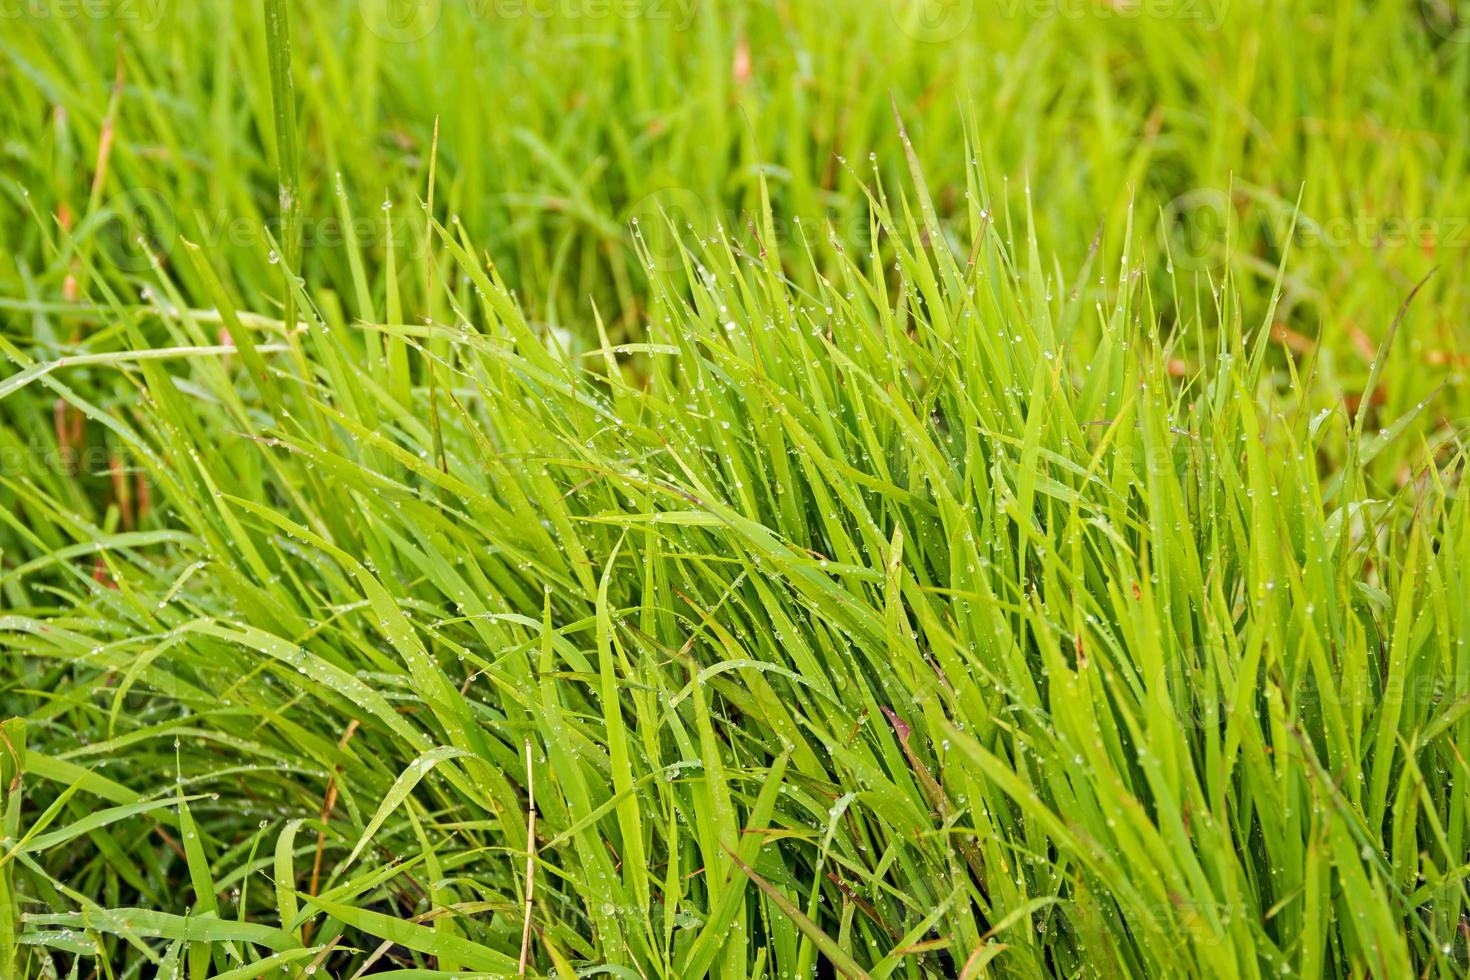 groene scheuten van voorjaar gras in water foto